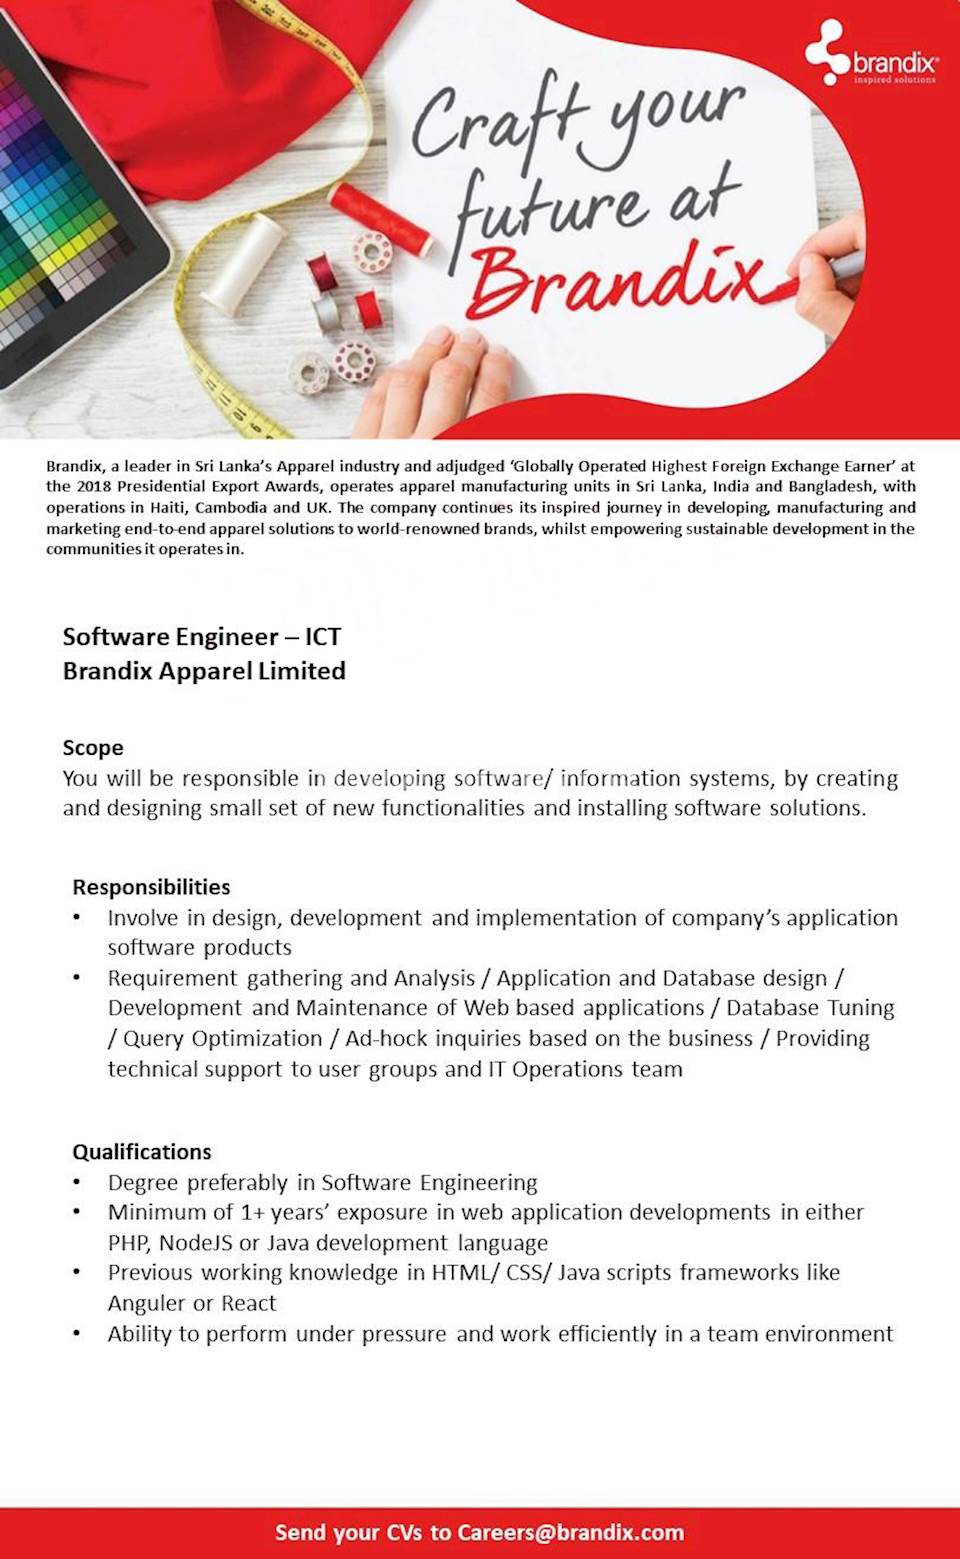 Software Engineer - ICT 